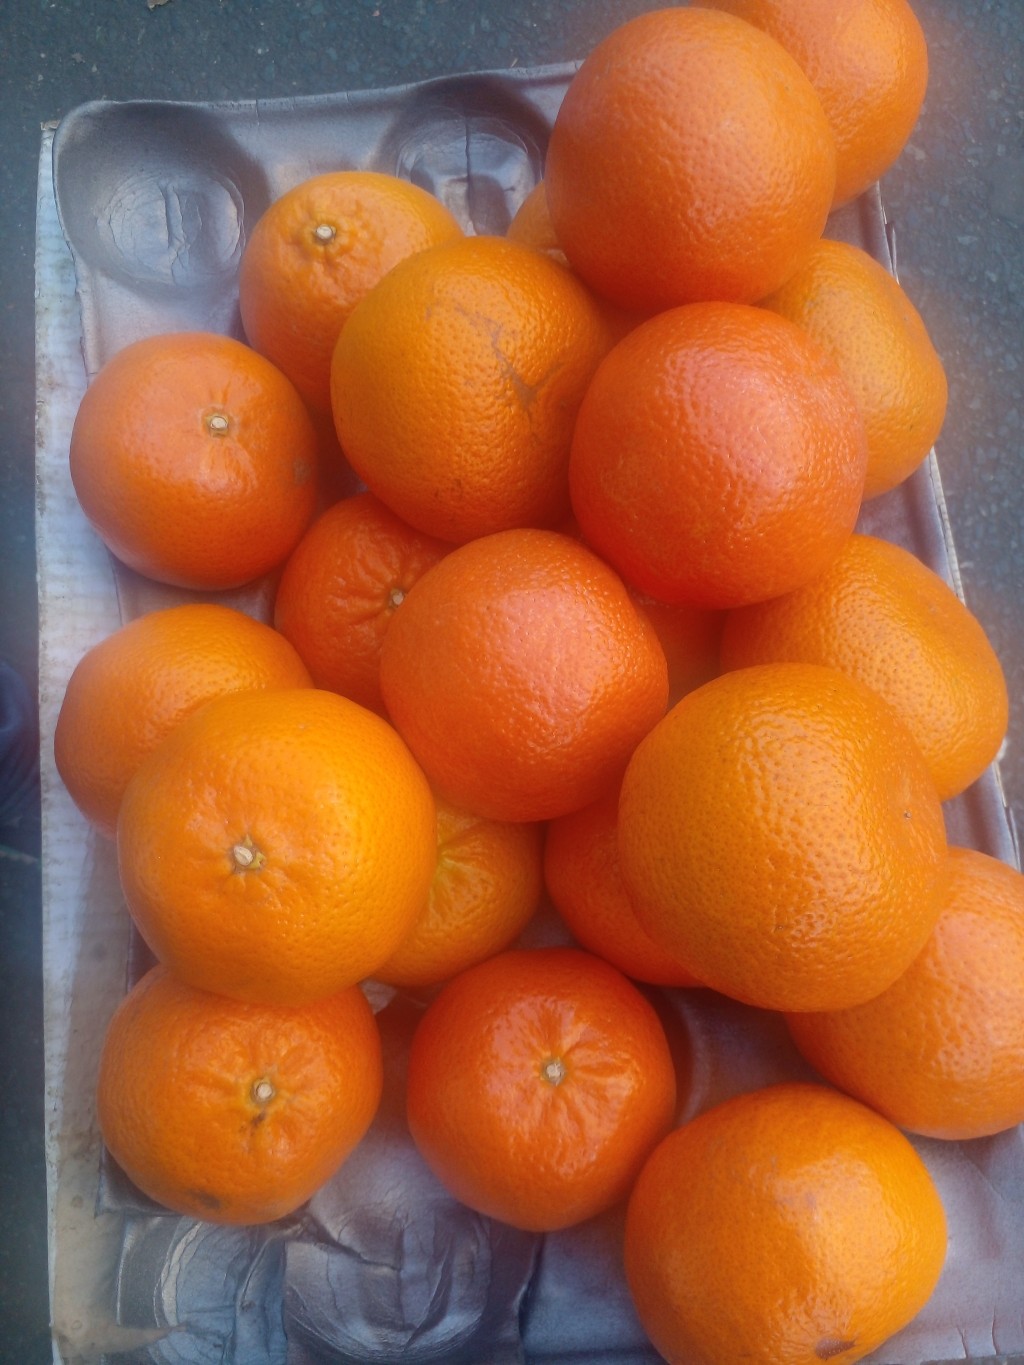 Benefits of Tangerine/Mandarine